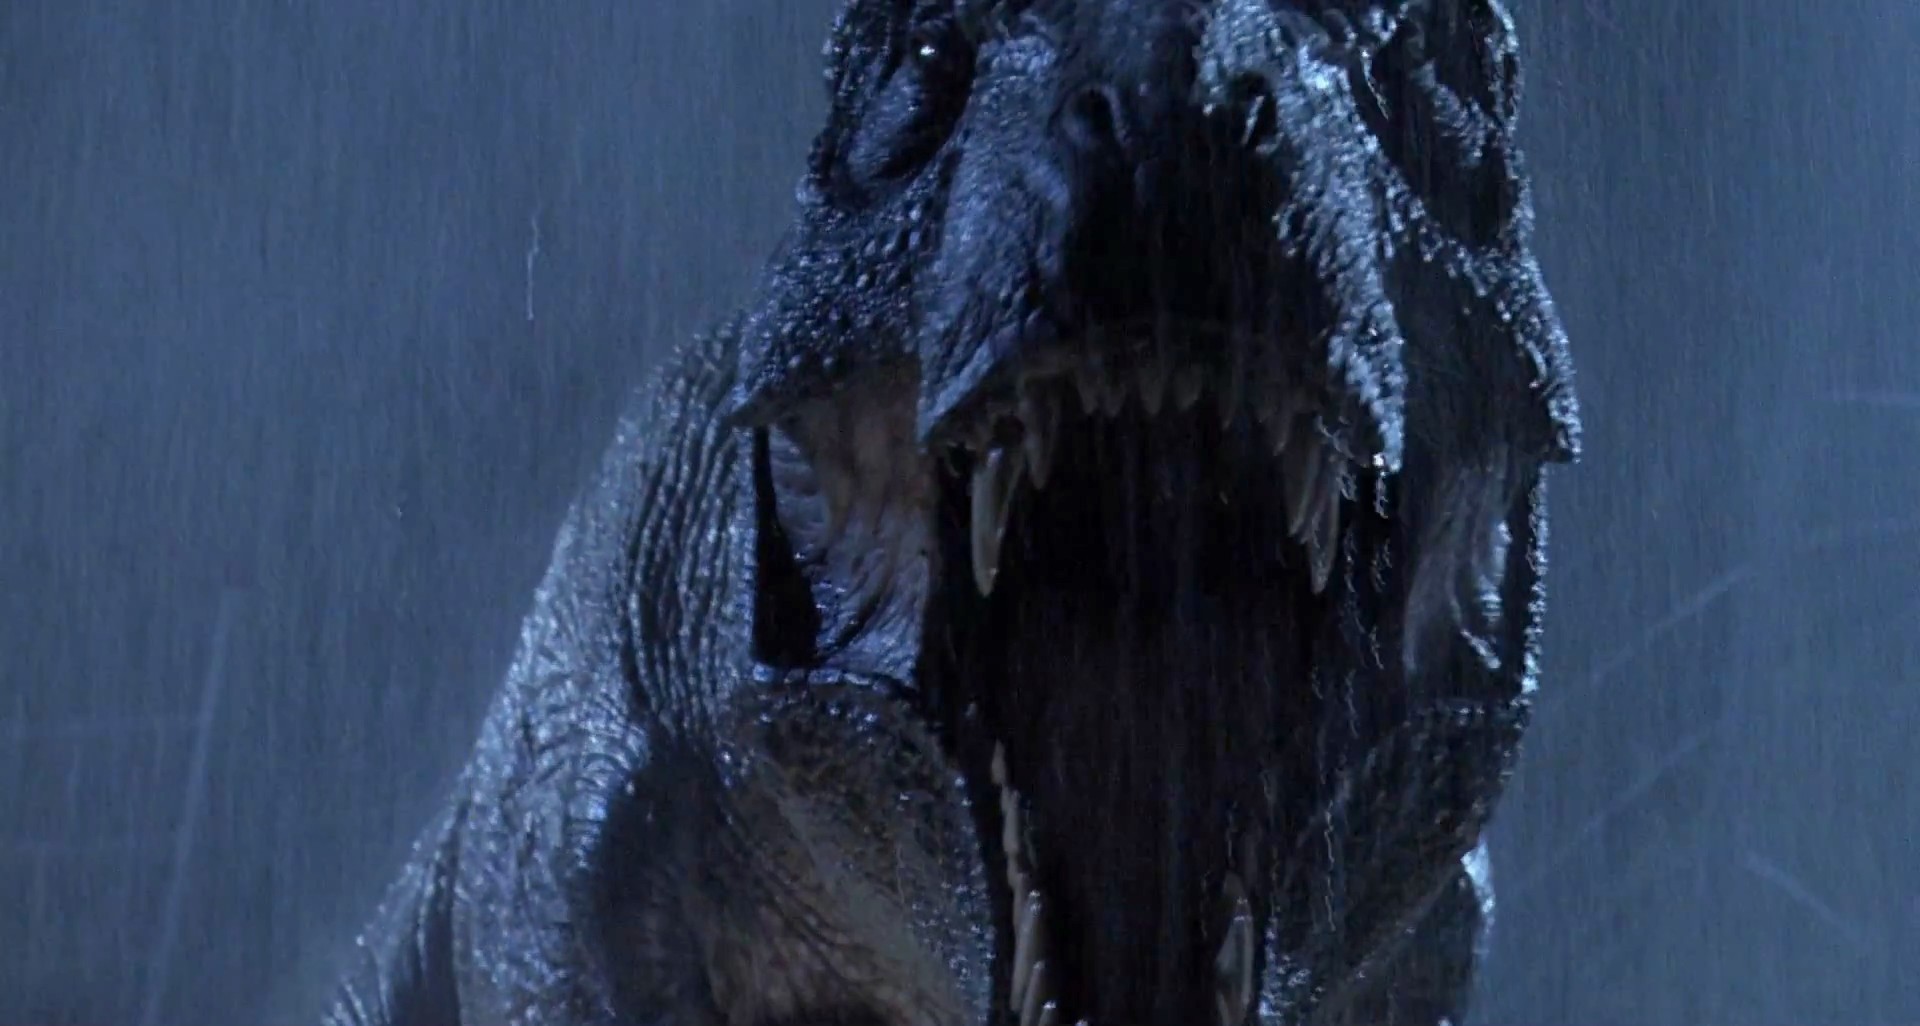 T-Rex roaring